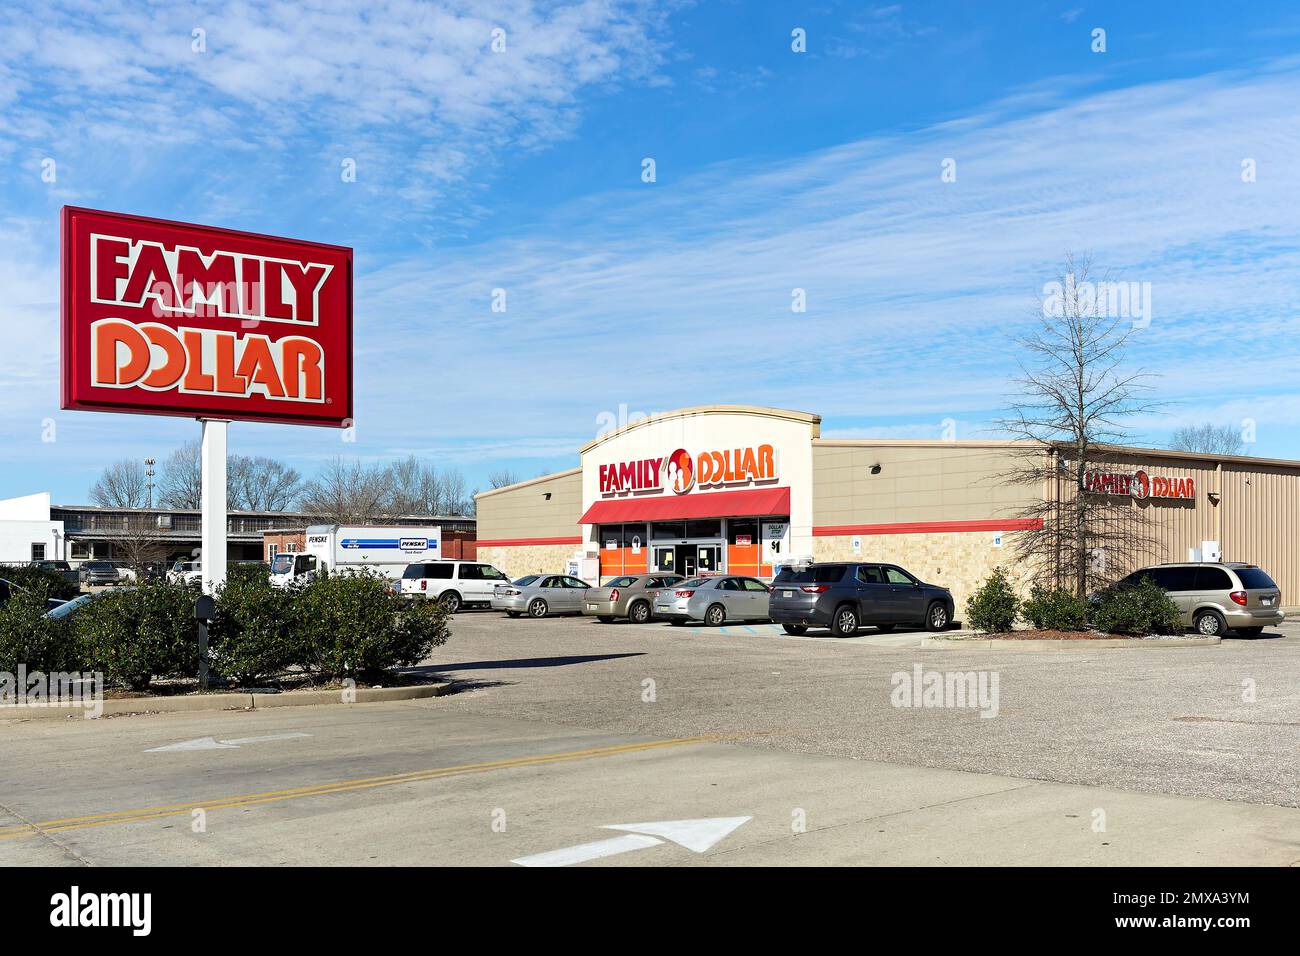 Family Dollar, ein preisgünstiges Einzelhandelsgeschäft, Fassade mit Firmenschild in Montgomery Alabama, USA. Stockfoto